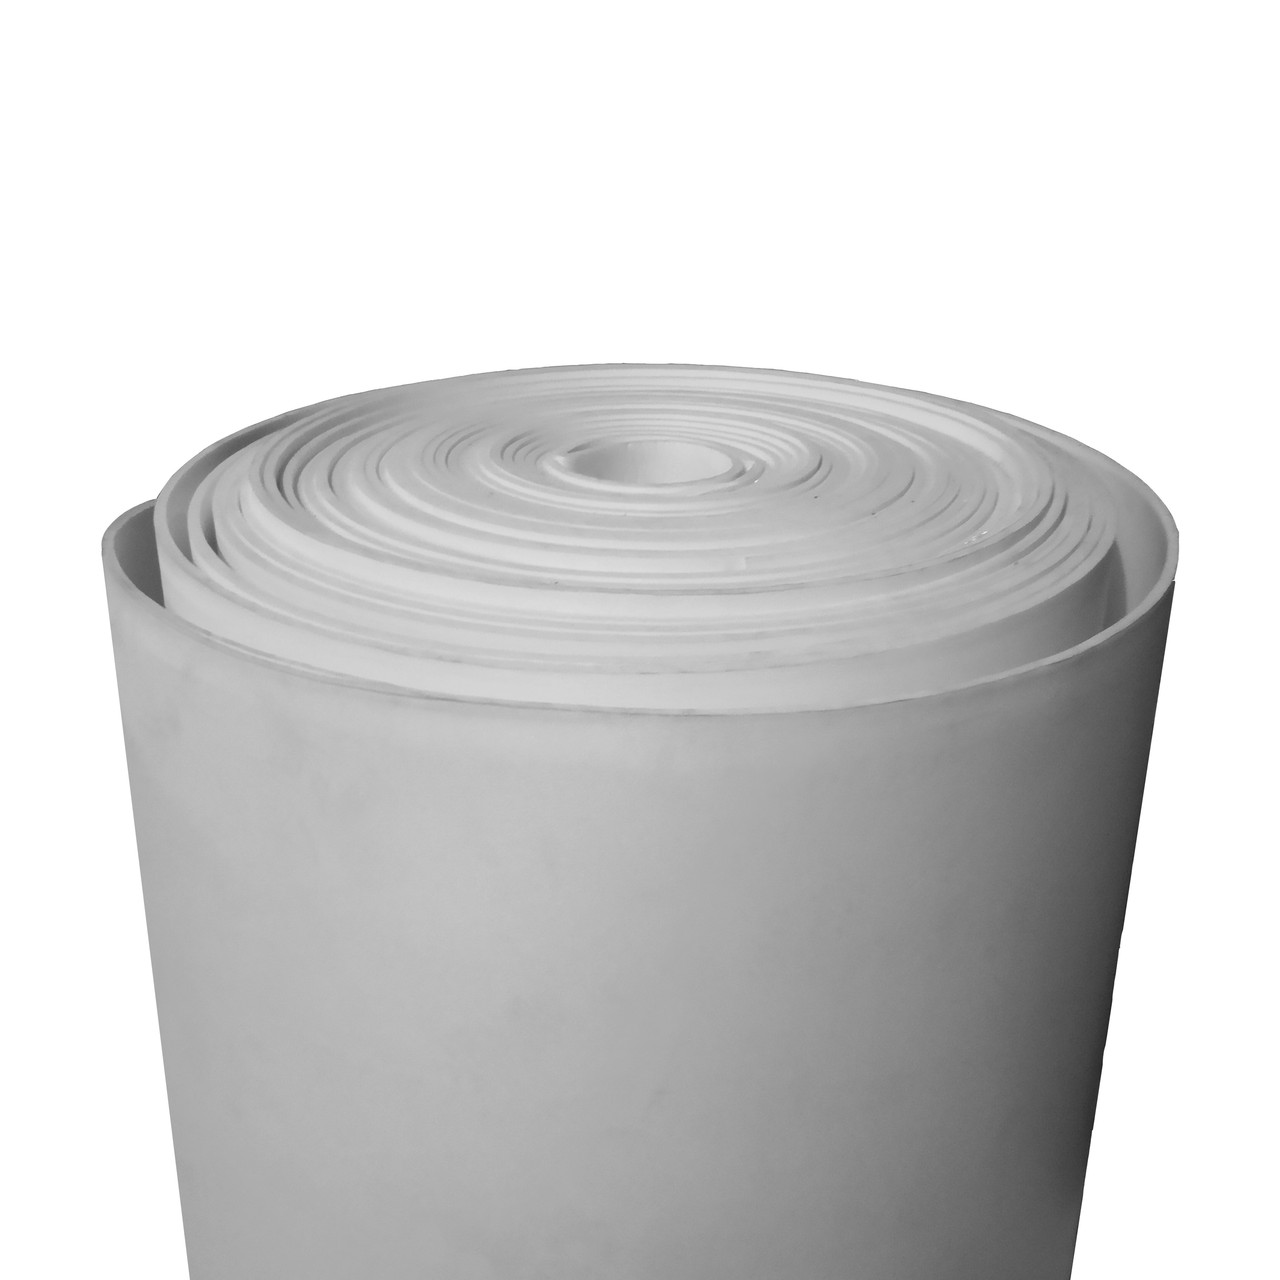 Фізично зшитий спінений поліетилен 8 мм 33 кг/м³ сірий (ширина 1,5 м)